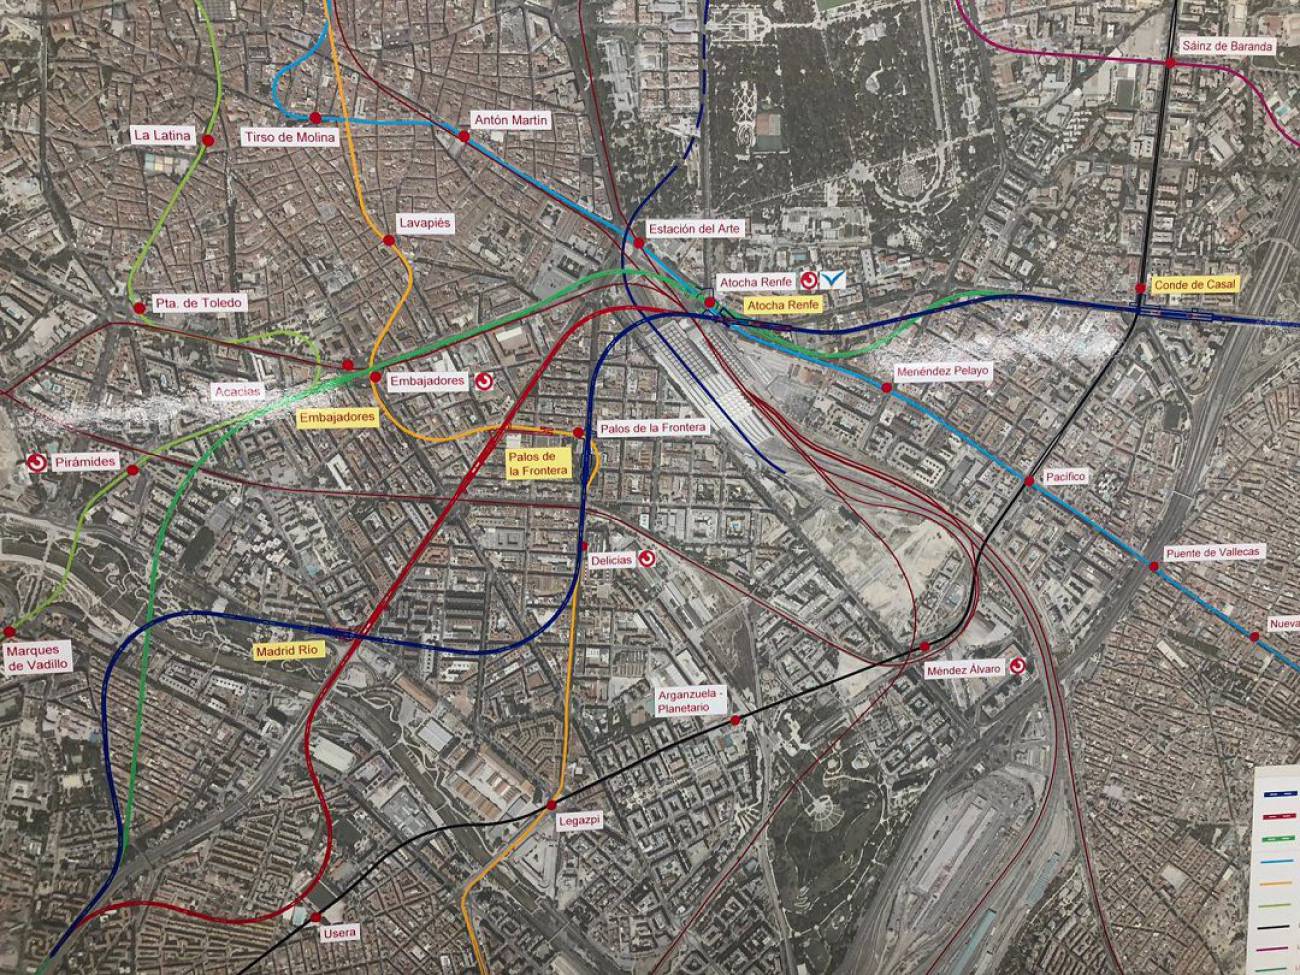 Madrid Río tendrá una parada de metro de la línea 11